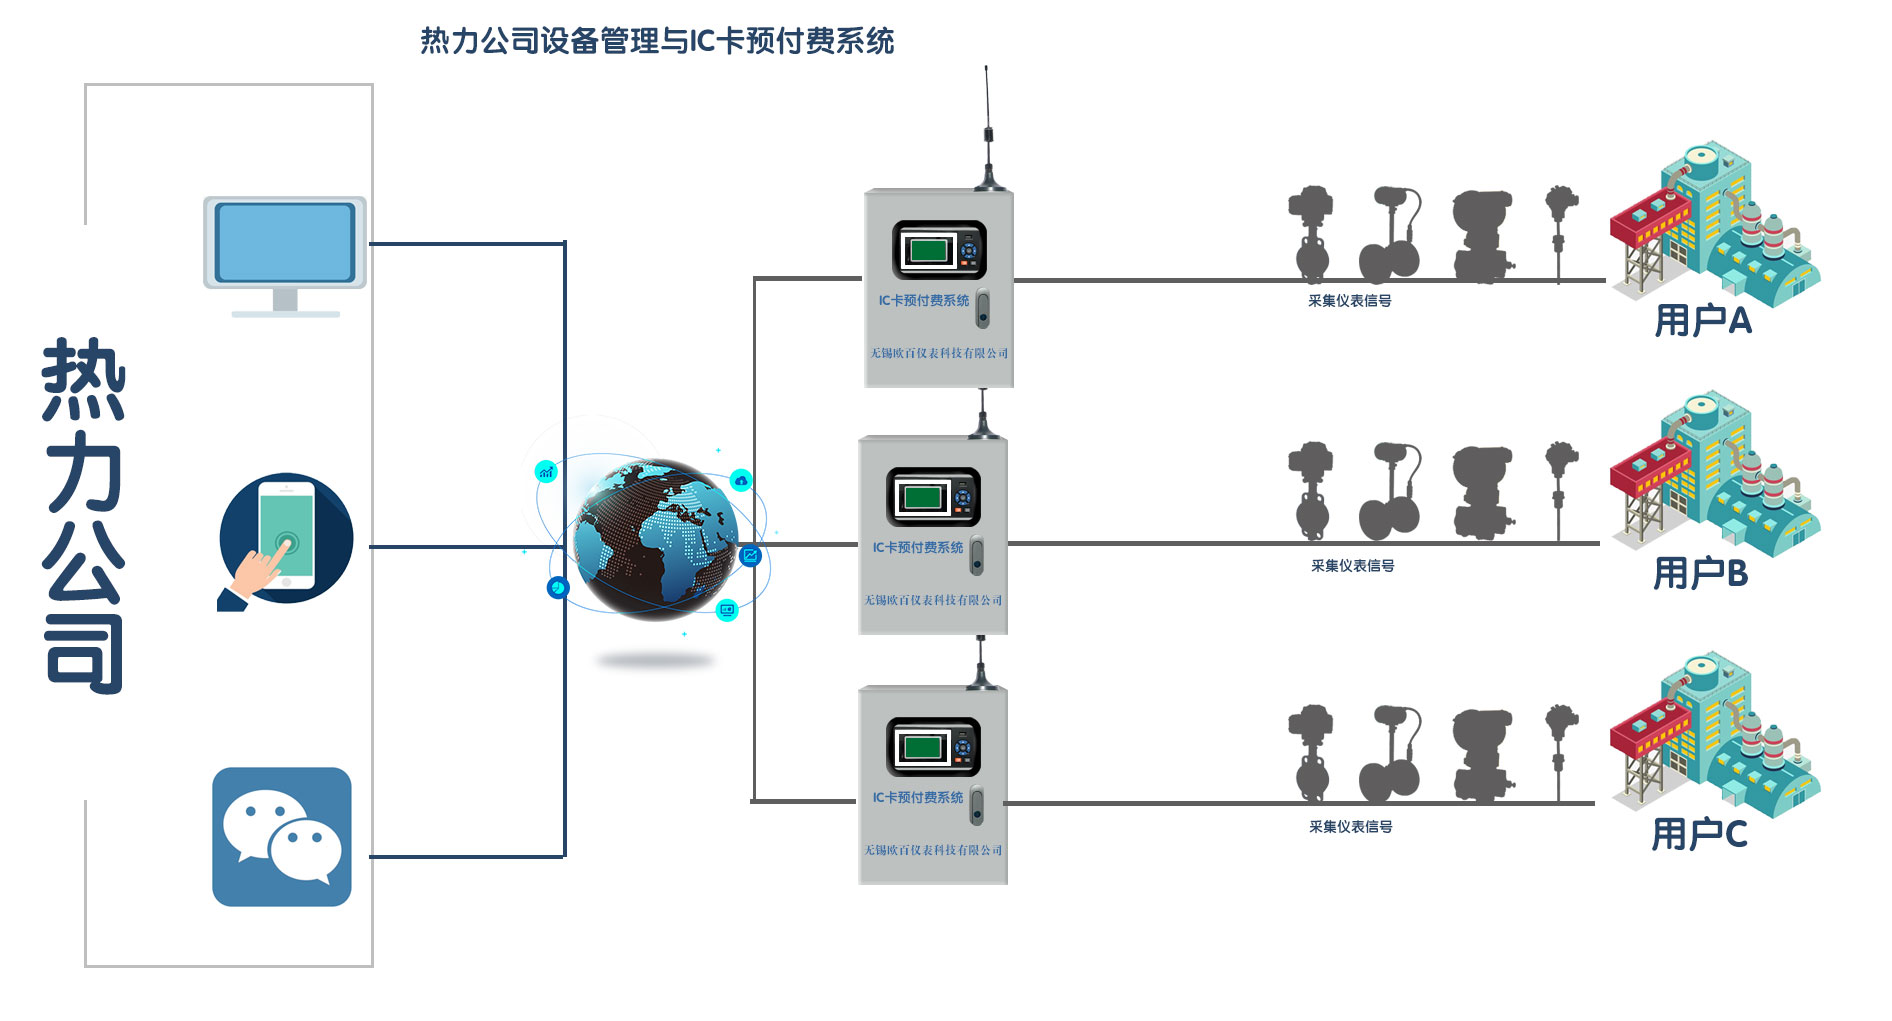 热力公司设备管理无线预付费系统图.jpg